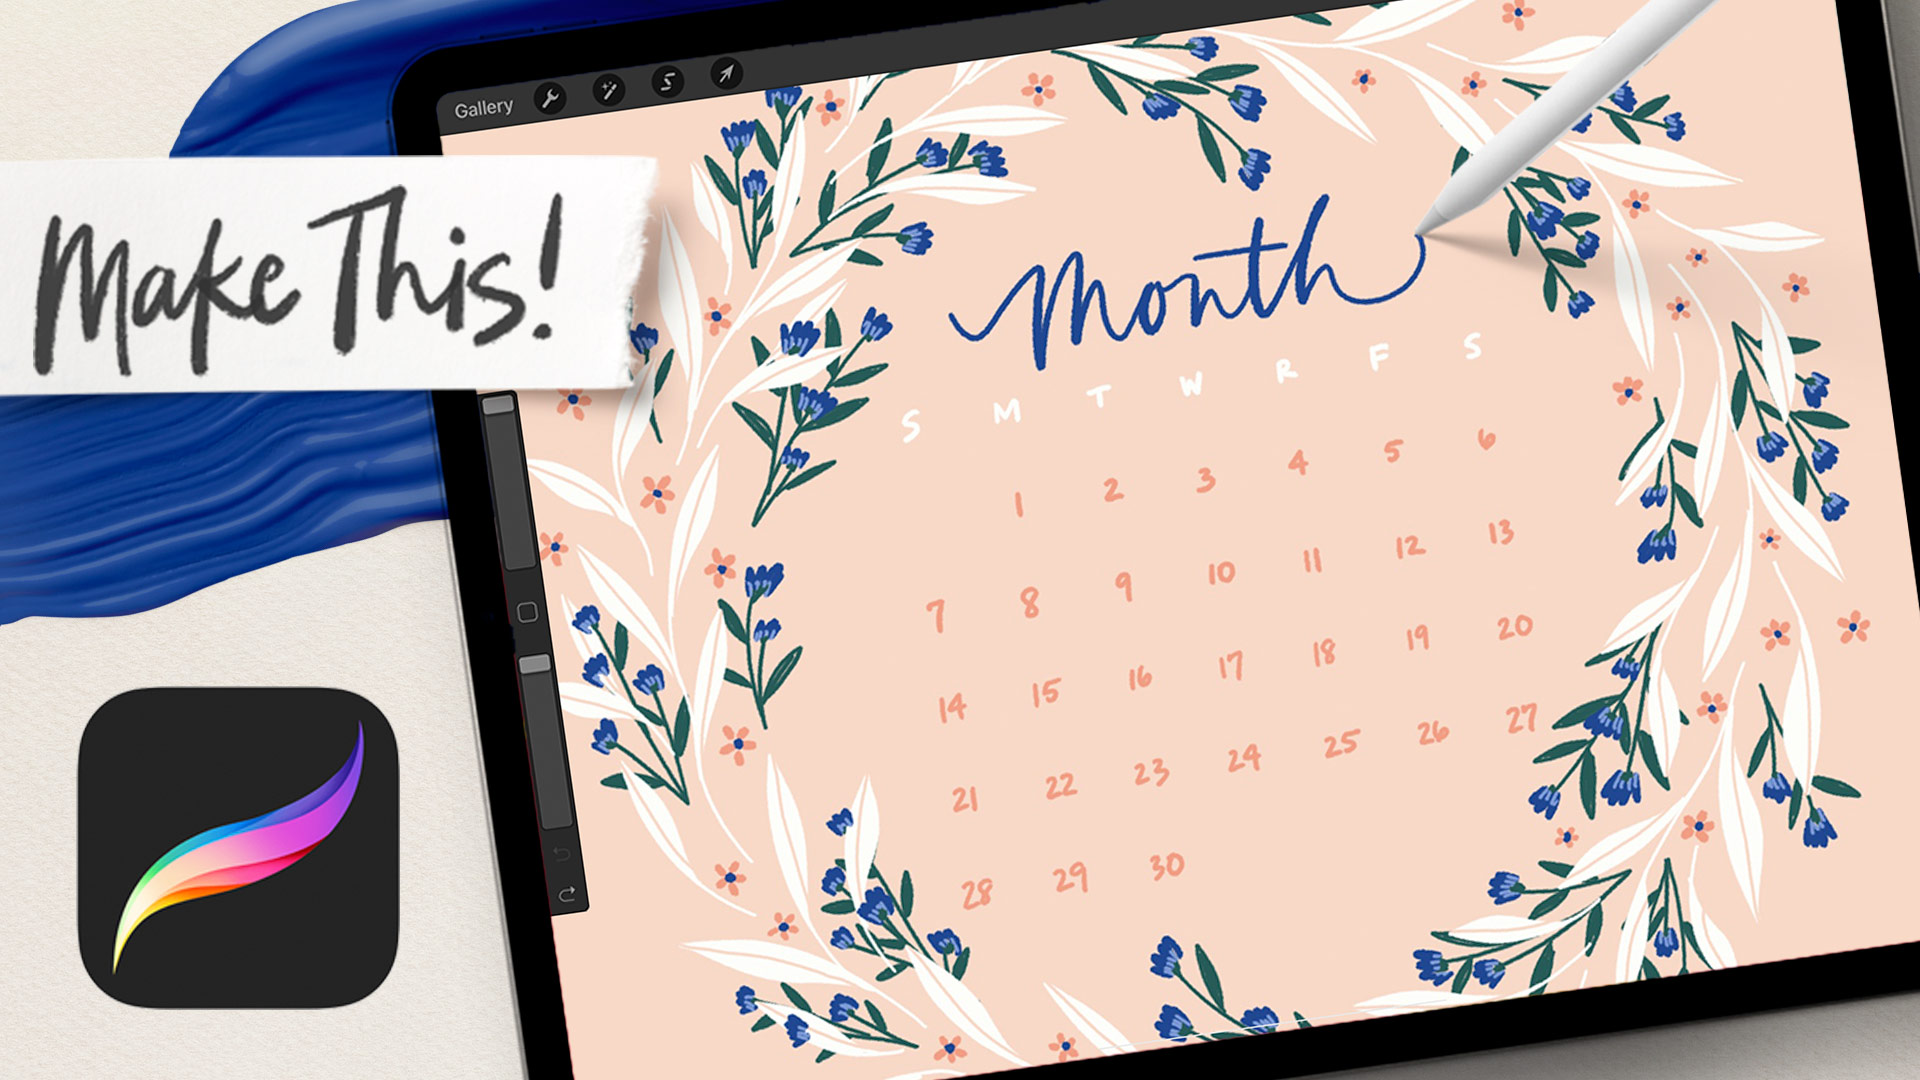 Floral doodle wreath calendar design tutorial